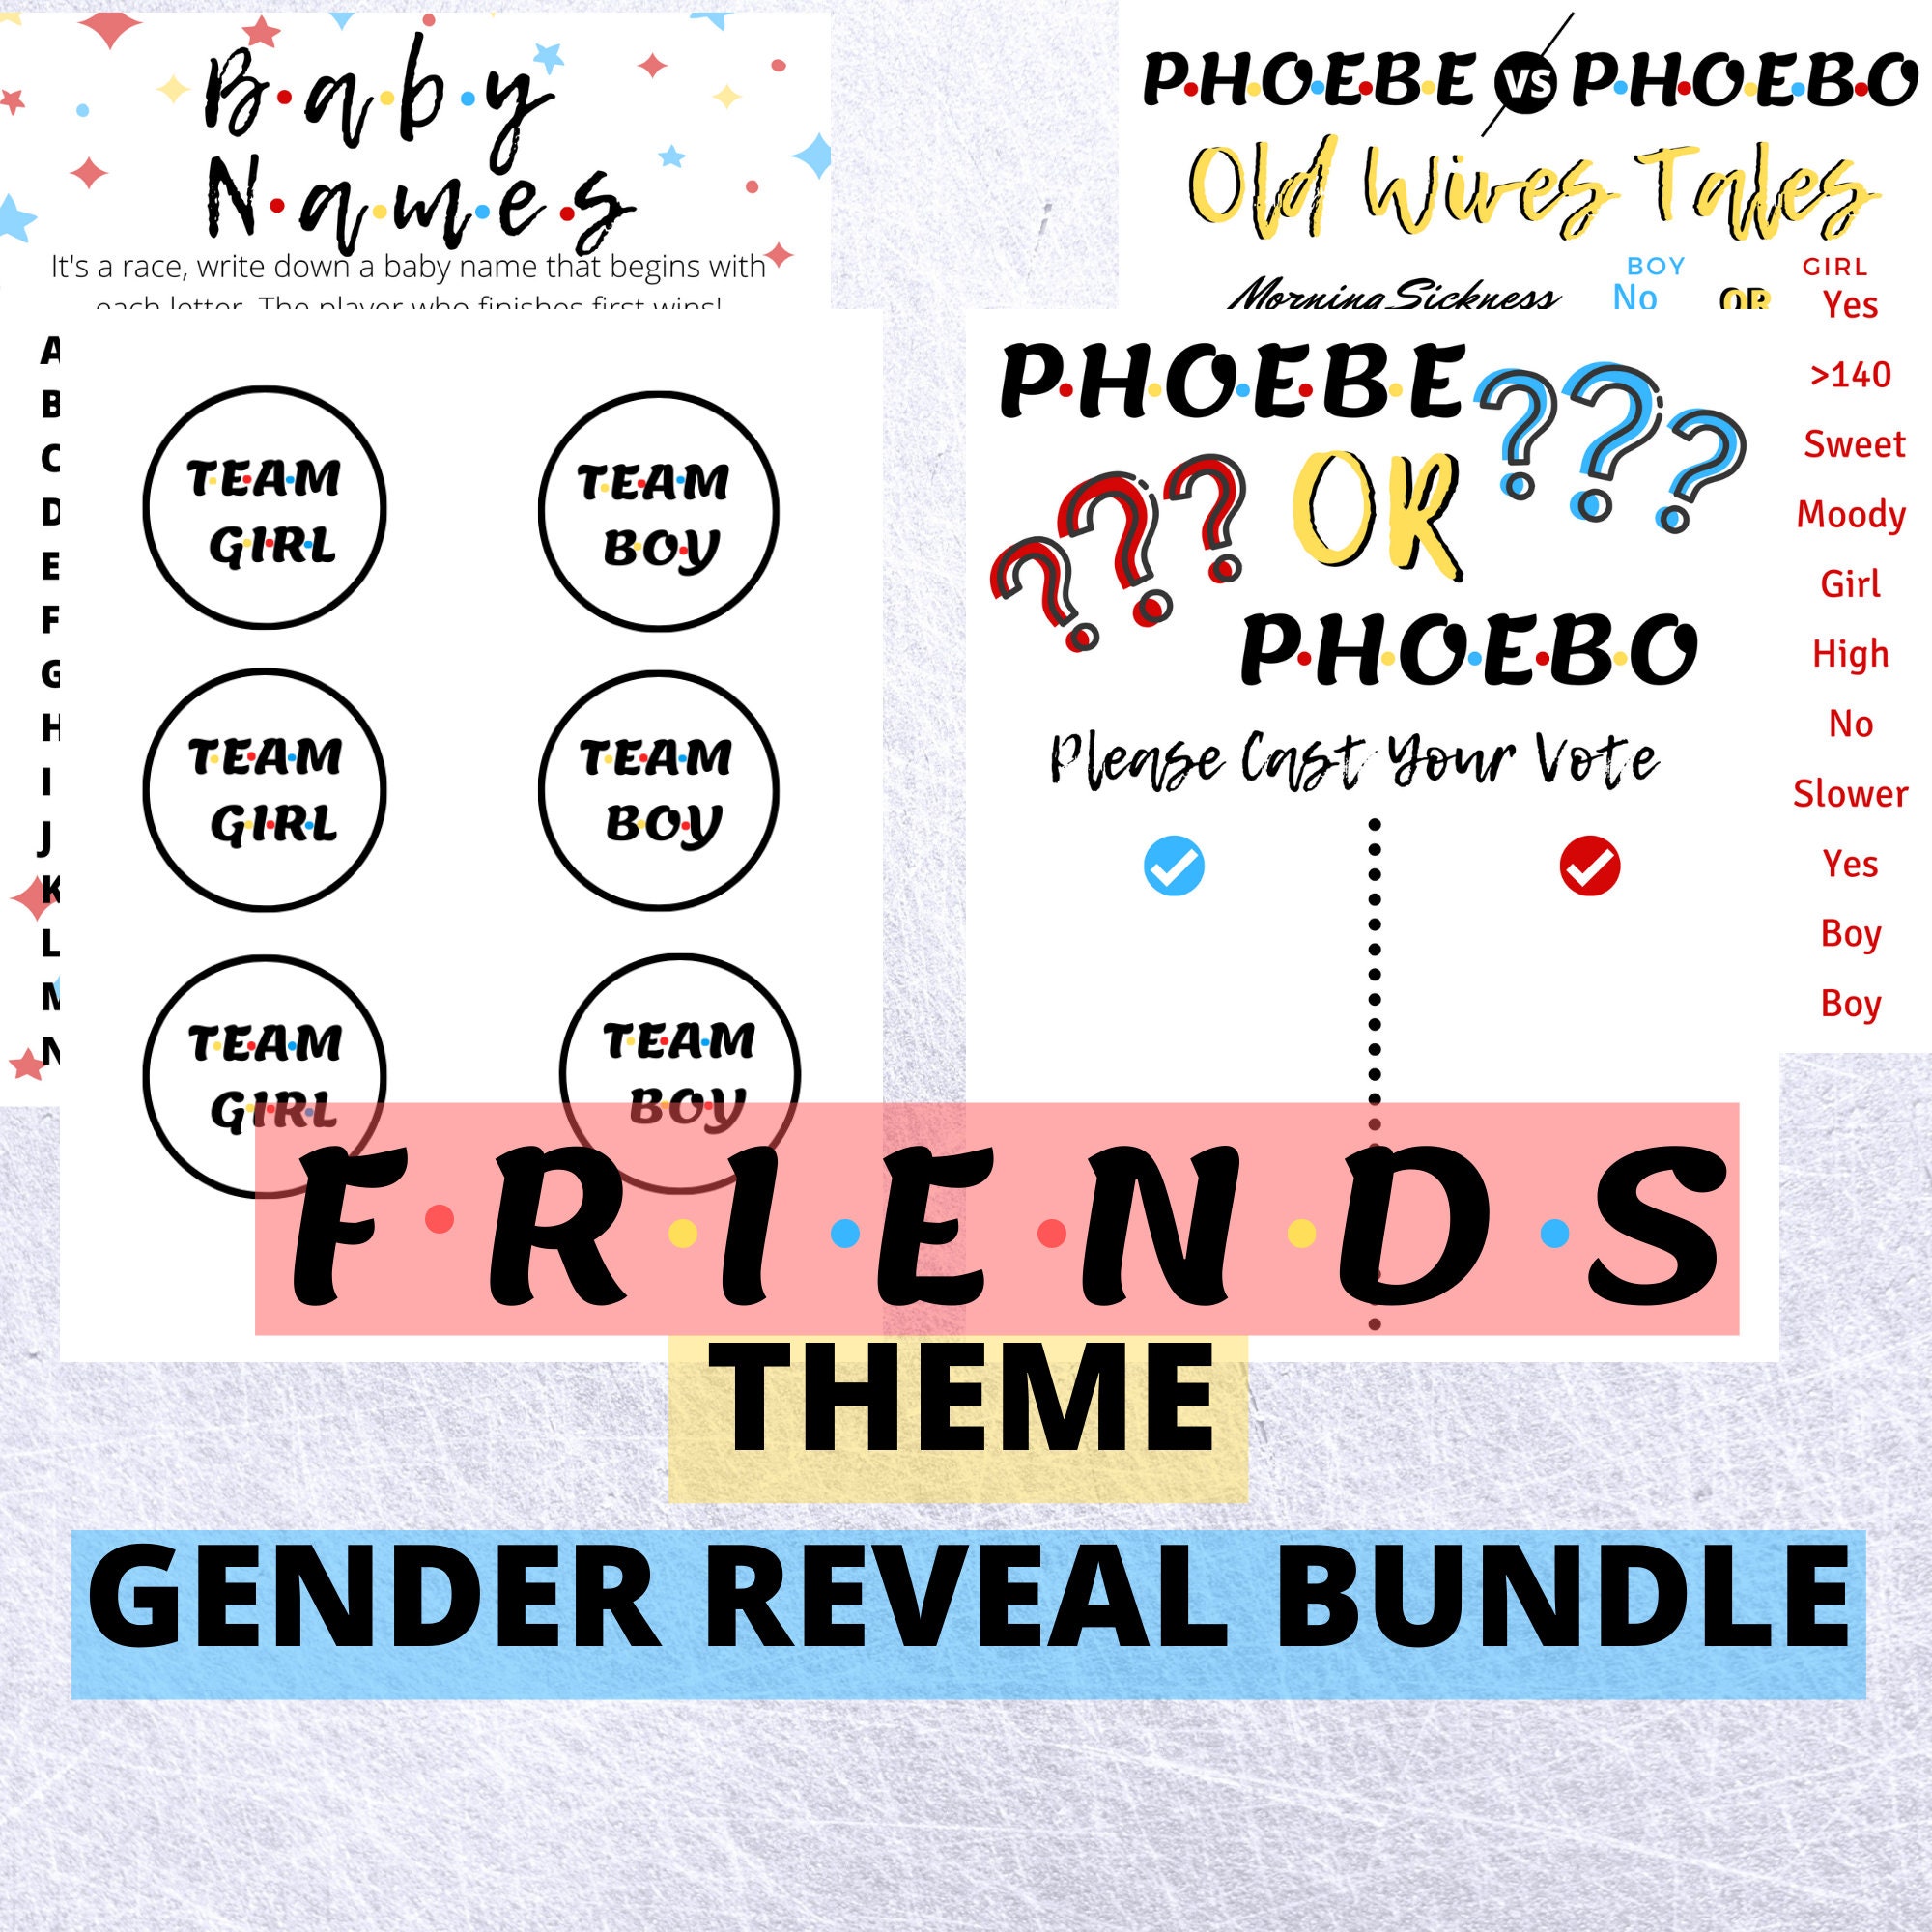 Phoebe or phoebo